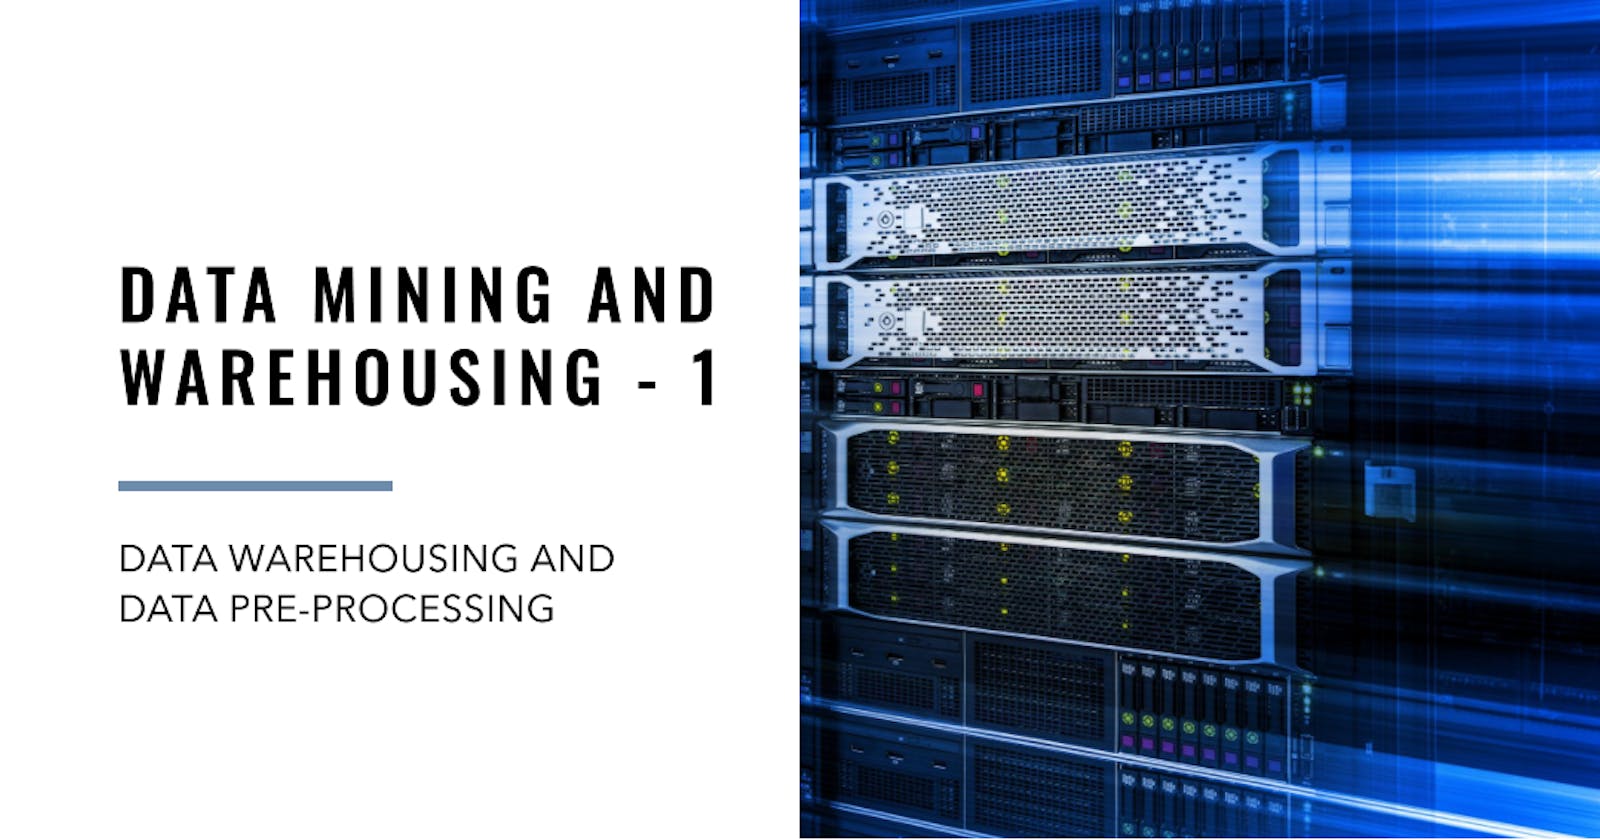 Data Mining and Warehousing - 1